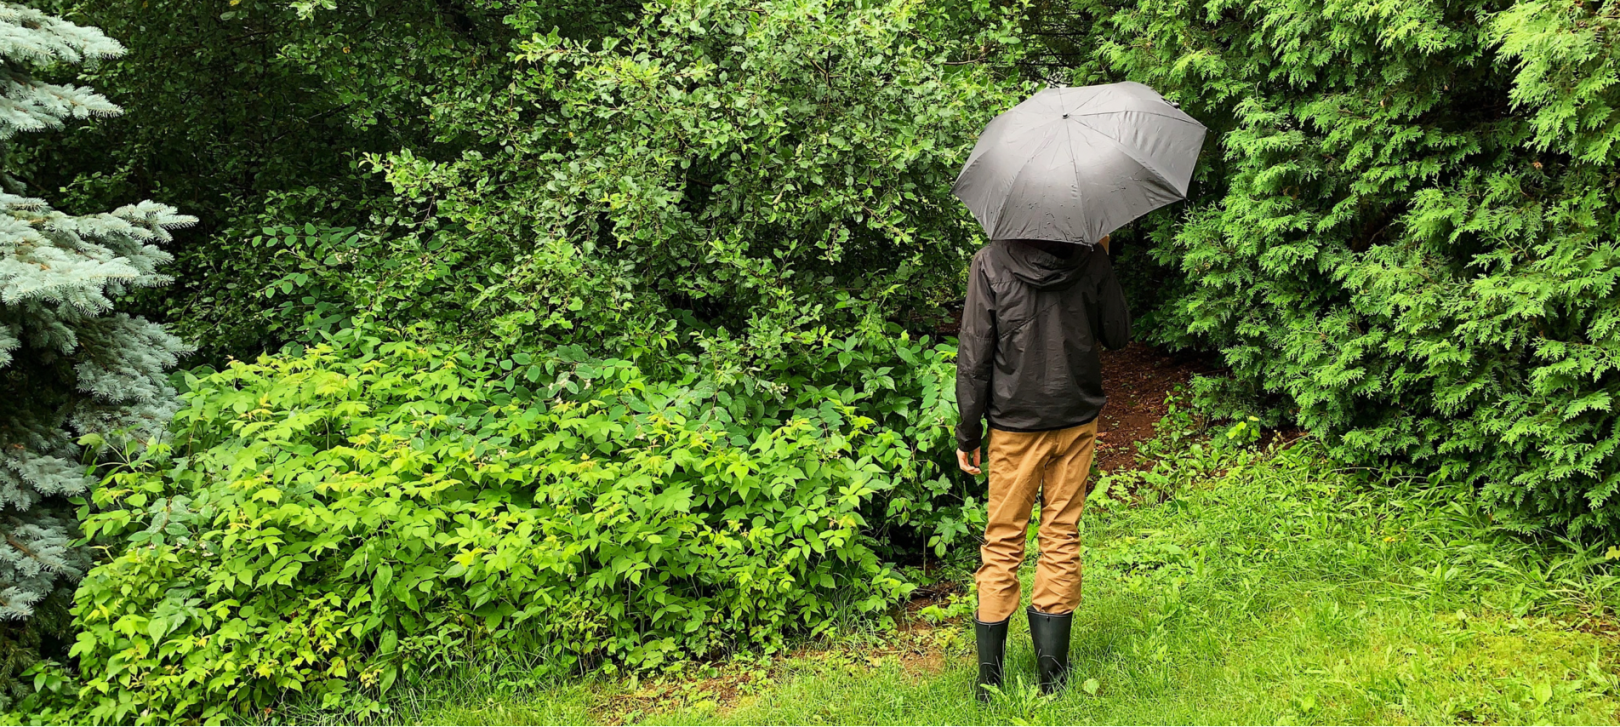 10 recettes pour les jours de pluie / Zachary Barde tient un parapluie